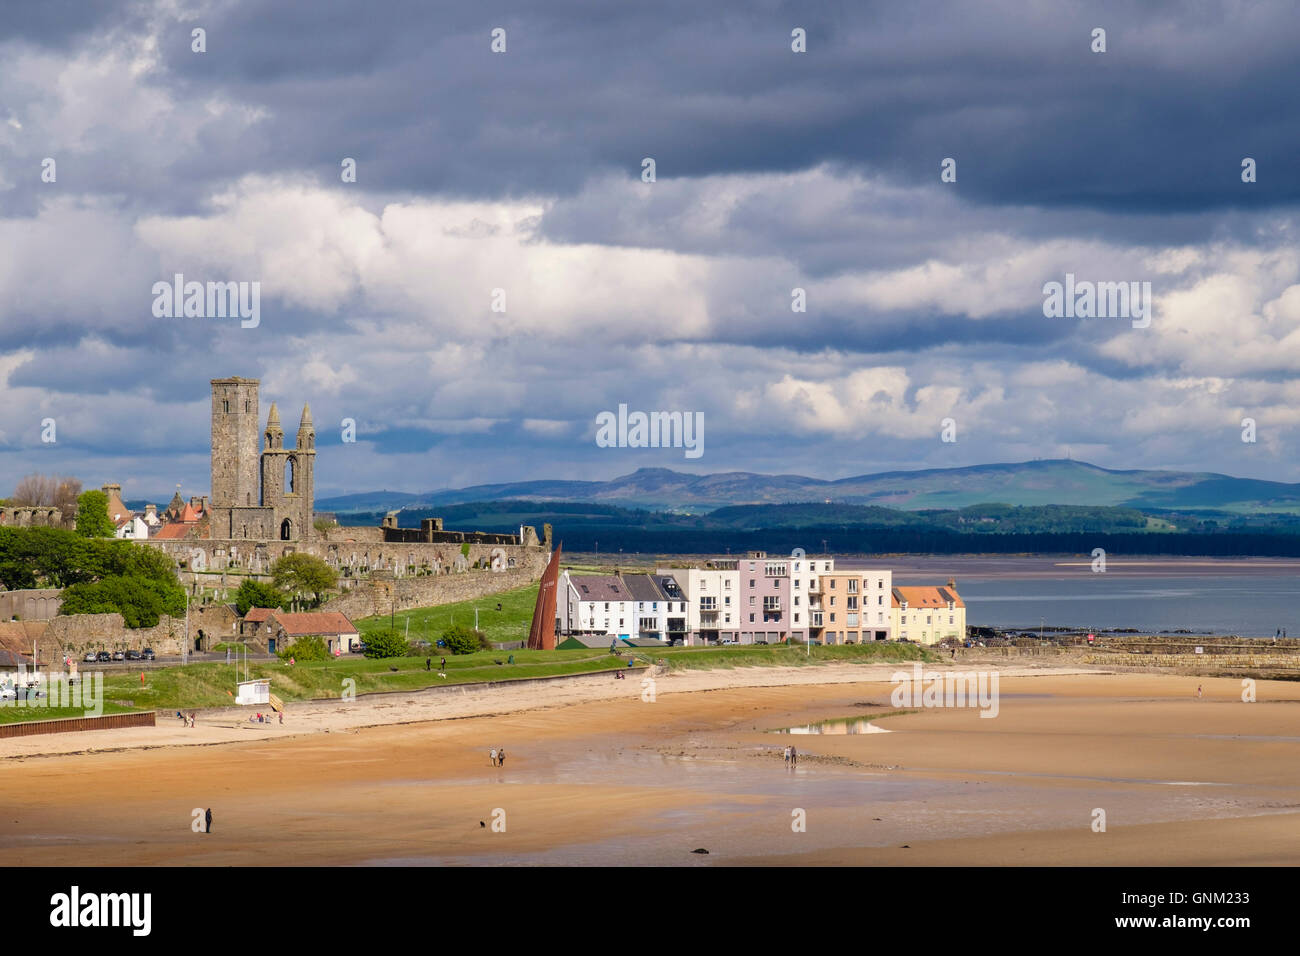 Vue sur l'est ensoleillée à la plage des Sables bitumineux dans les ruines de la cathédrale ville écossaise sous sombre dramatique ciel nuageux. St Andrews Fife Ecosse Royaume-Uni Grande-Bretagne Banque D'Images